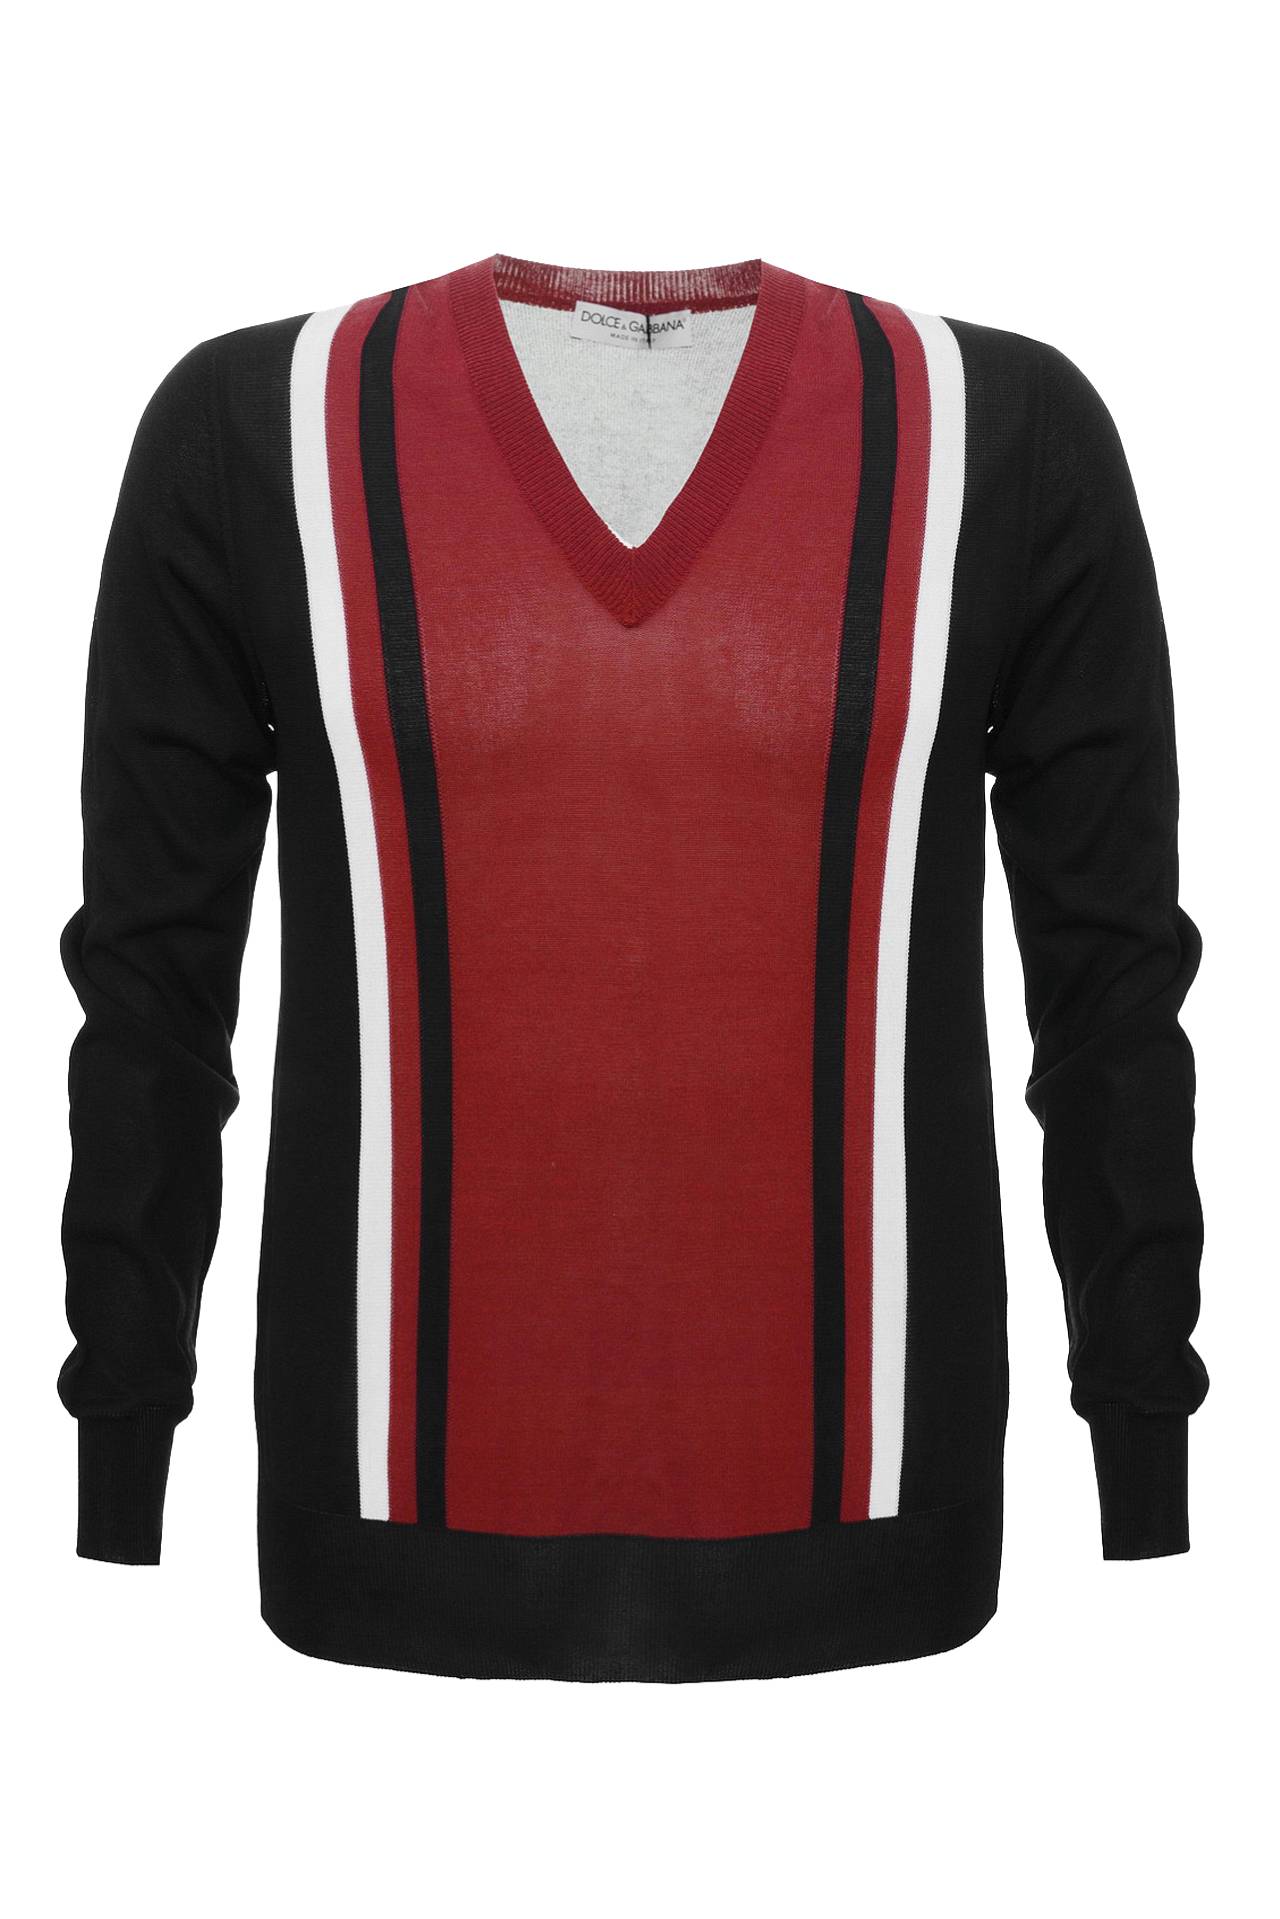 Одежда мужская Свитер DOLCE & GABBANA (K283M2103/00). Купить за 15400 руб.